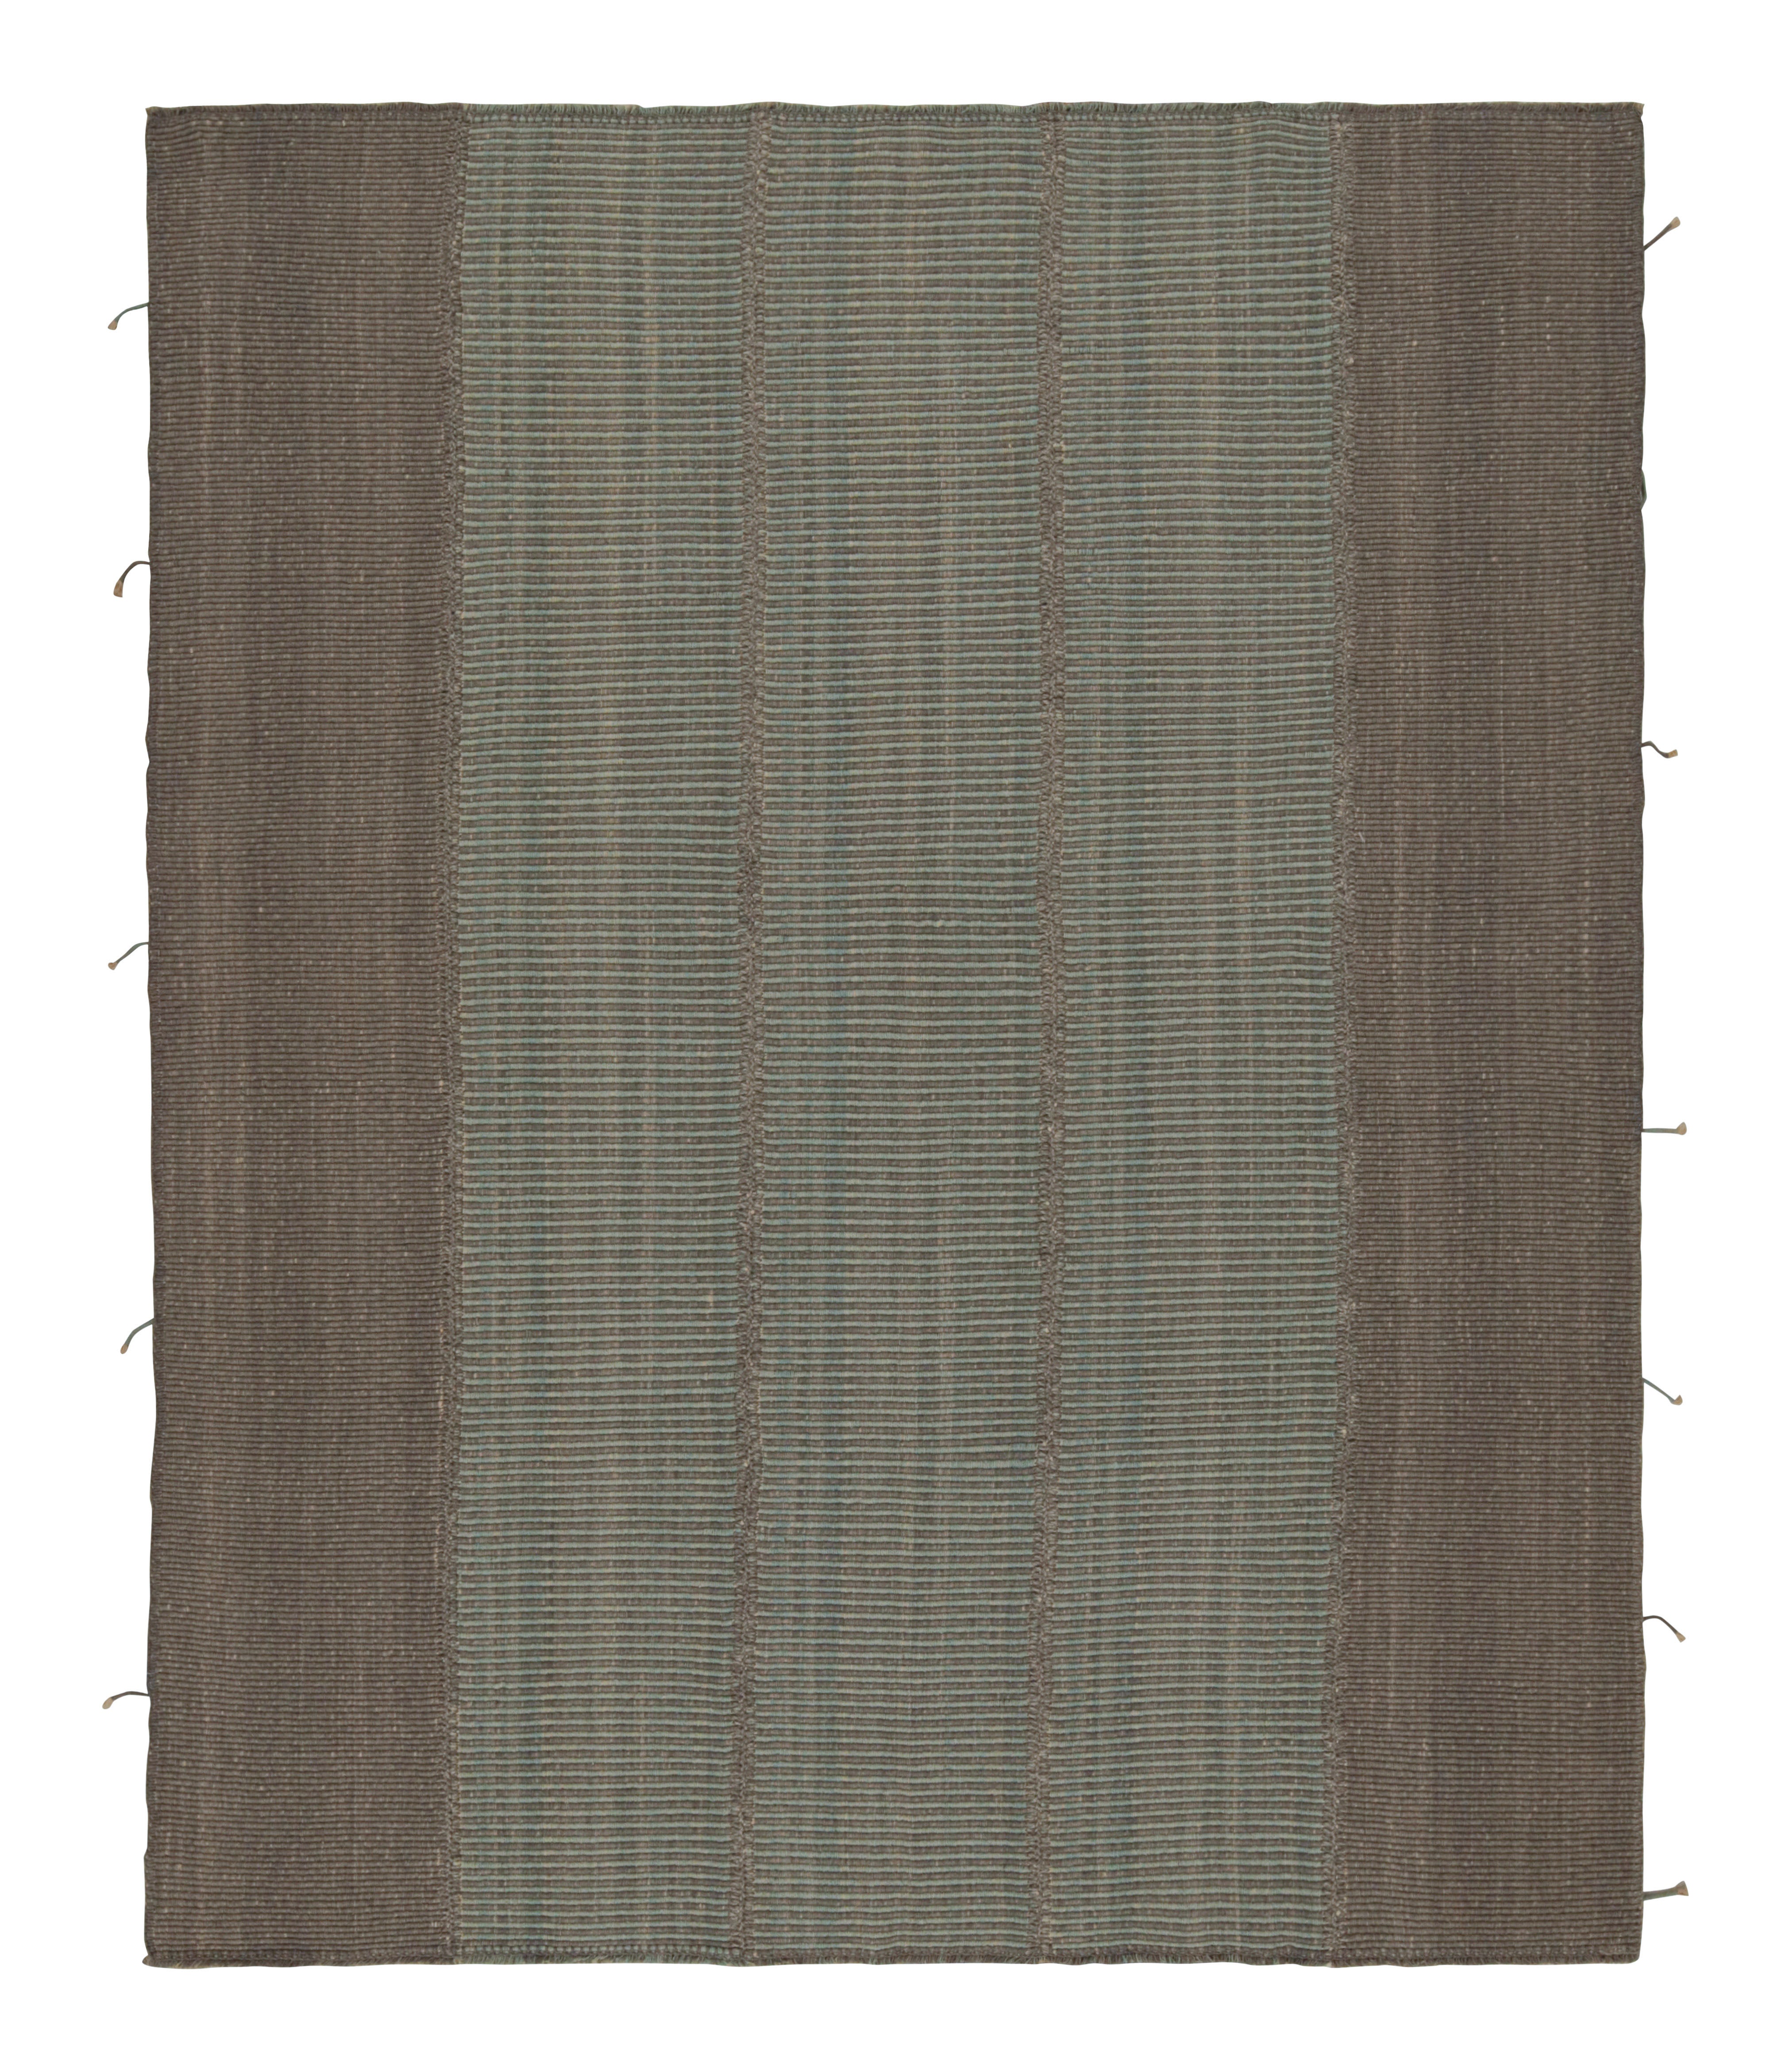 Vintage Afghan Tribal Kilim Teppich mit bunten Streifen, von Rug & Kilim